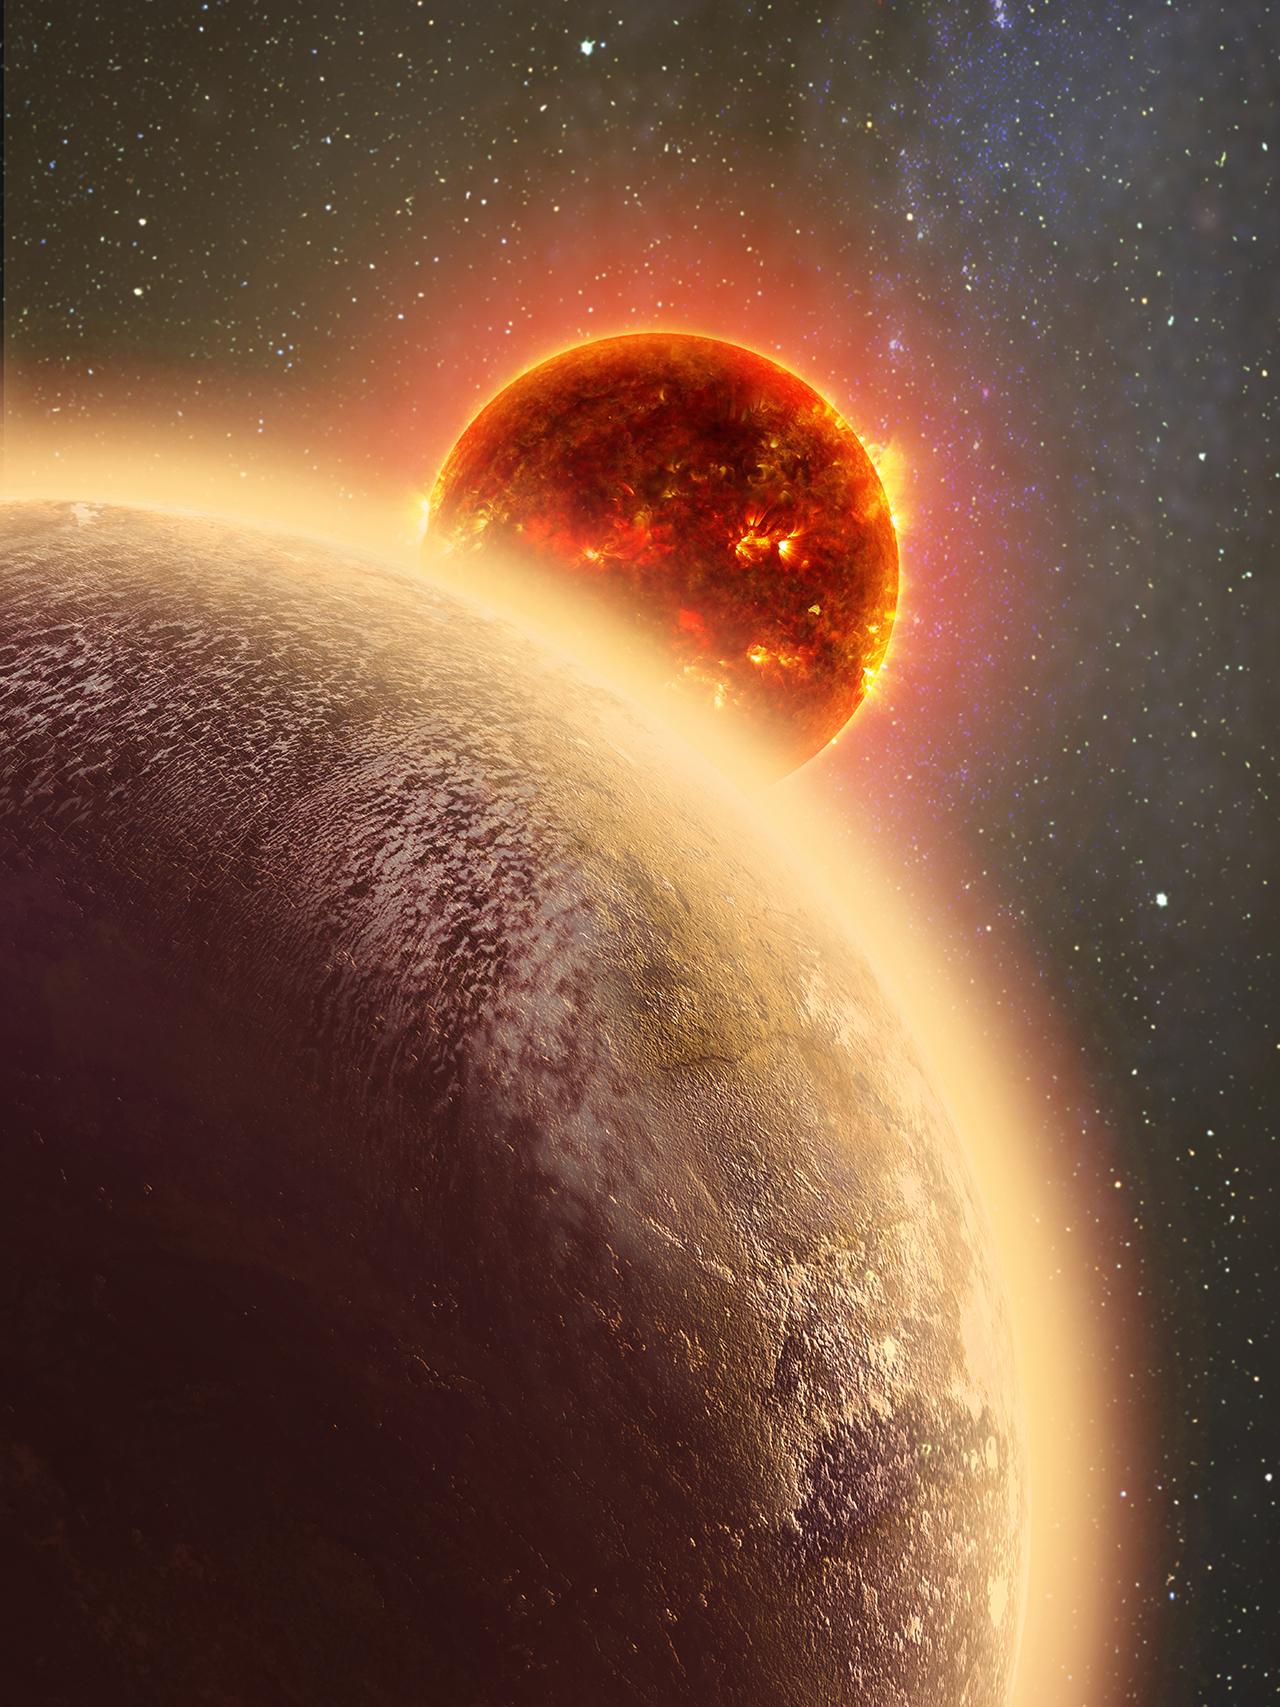 I november 2015 tillkännagav forskarna upptäckten av GJ 1132b, en jordliknande planet på 39 ljusårs avstånd från jorden. På denna planet tycker sig forskarna ha sett tecken på både atmosfär och vatten, förutsättningar för att det vi kallar för liv ska kunna uppstå.